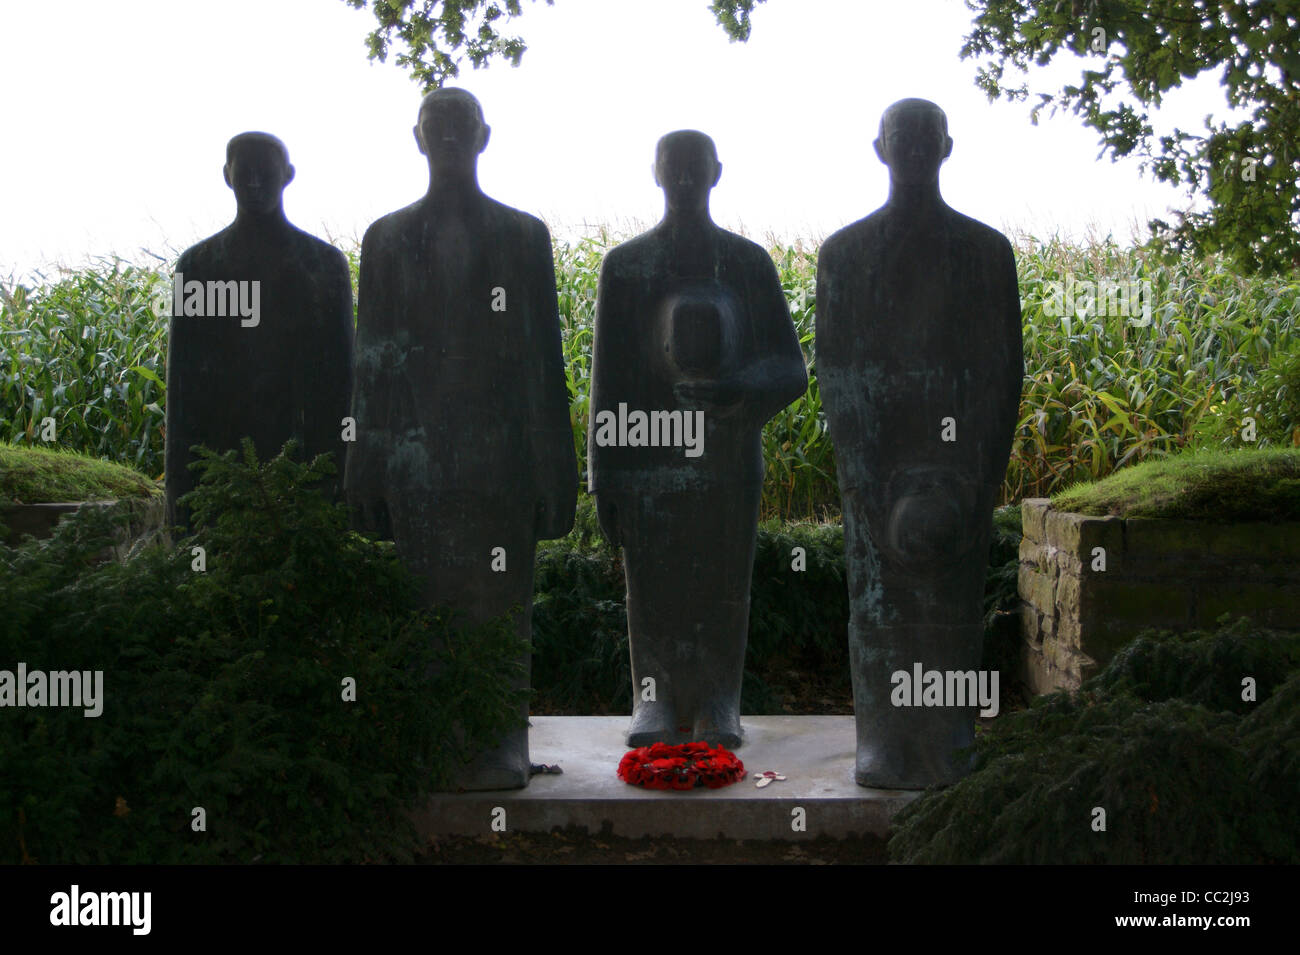 Des statues en bronze par Emil Krieger allemand de Langemark, cimetière militaire de la première guerre mondiale, Langemark-Poelkapelle Ieper, Ypres, Belgique Banque D'Images